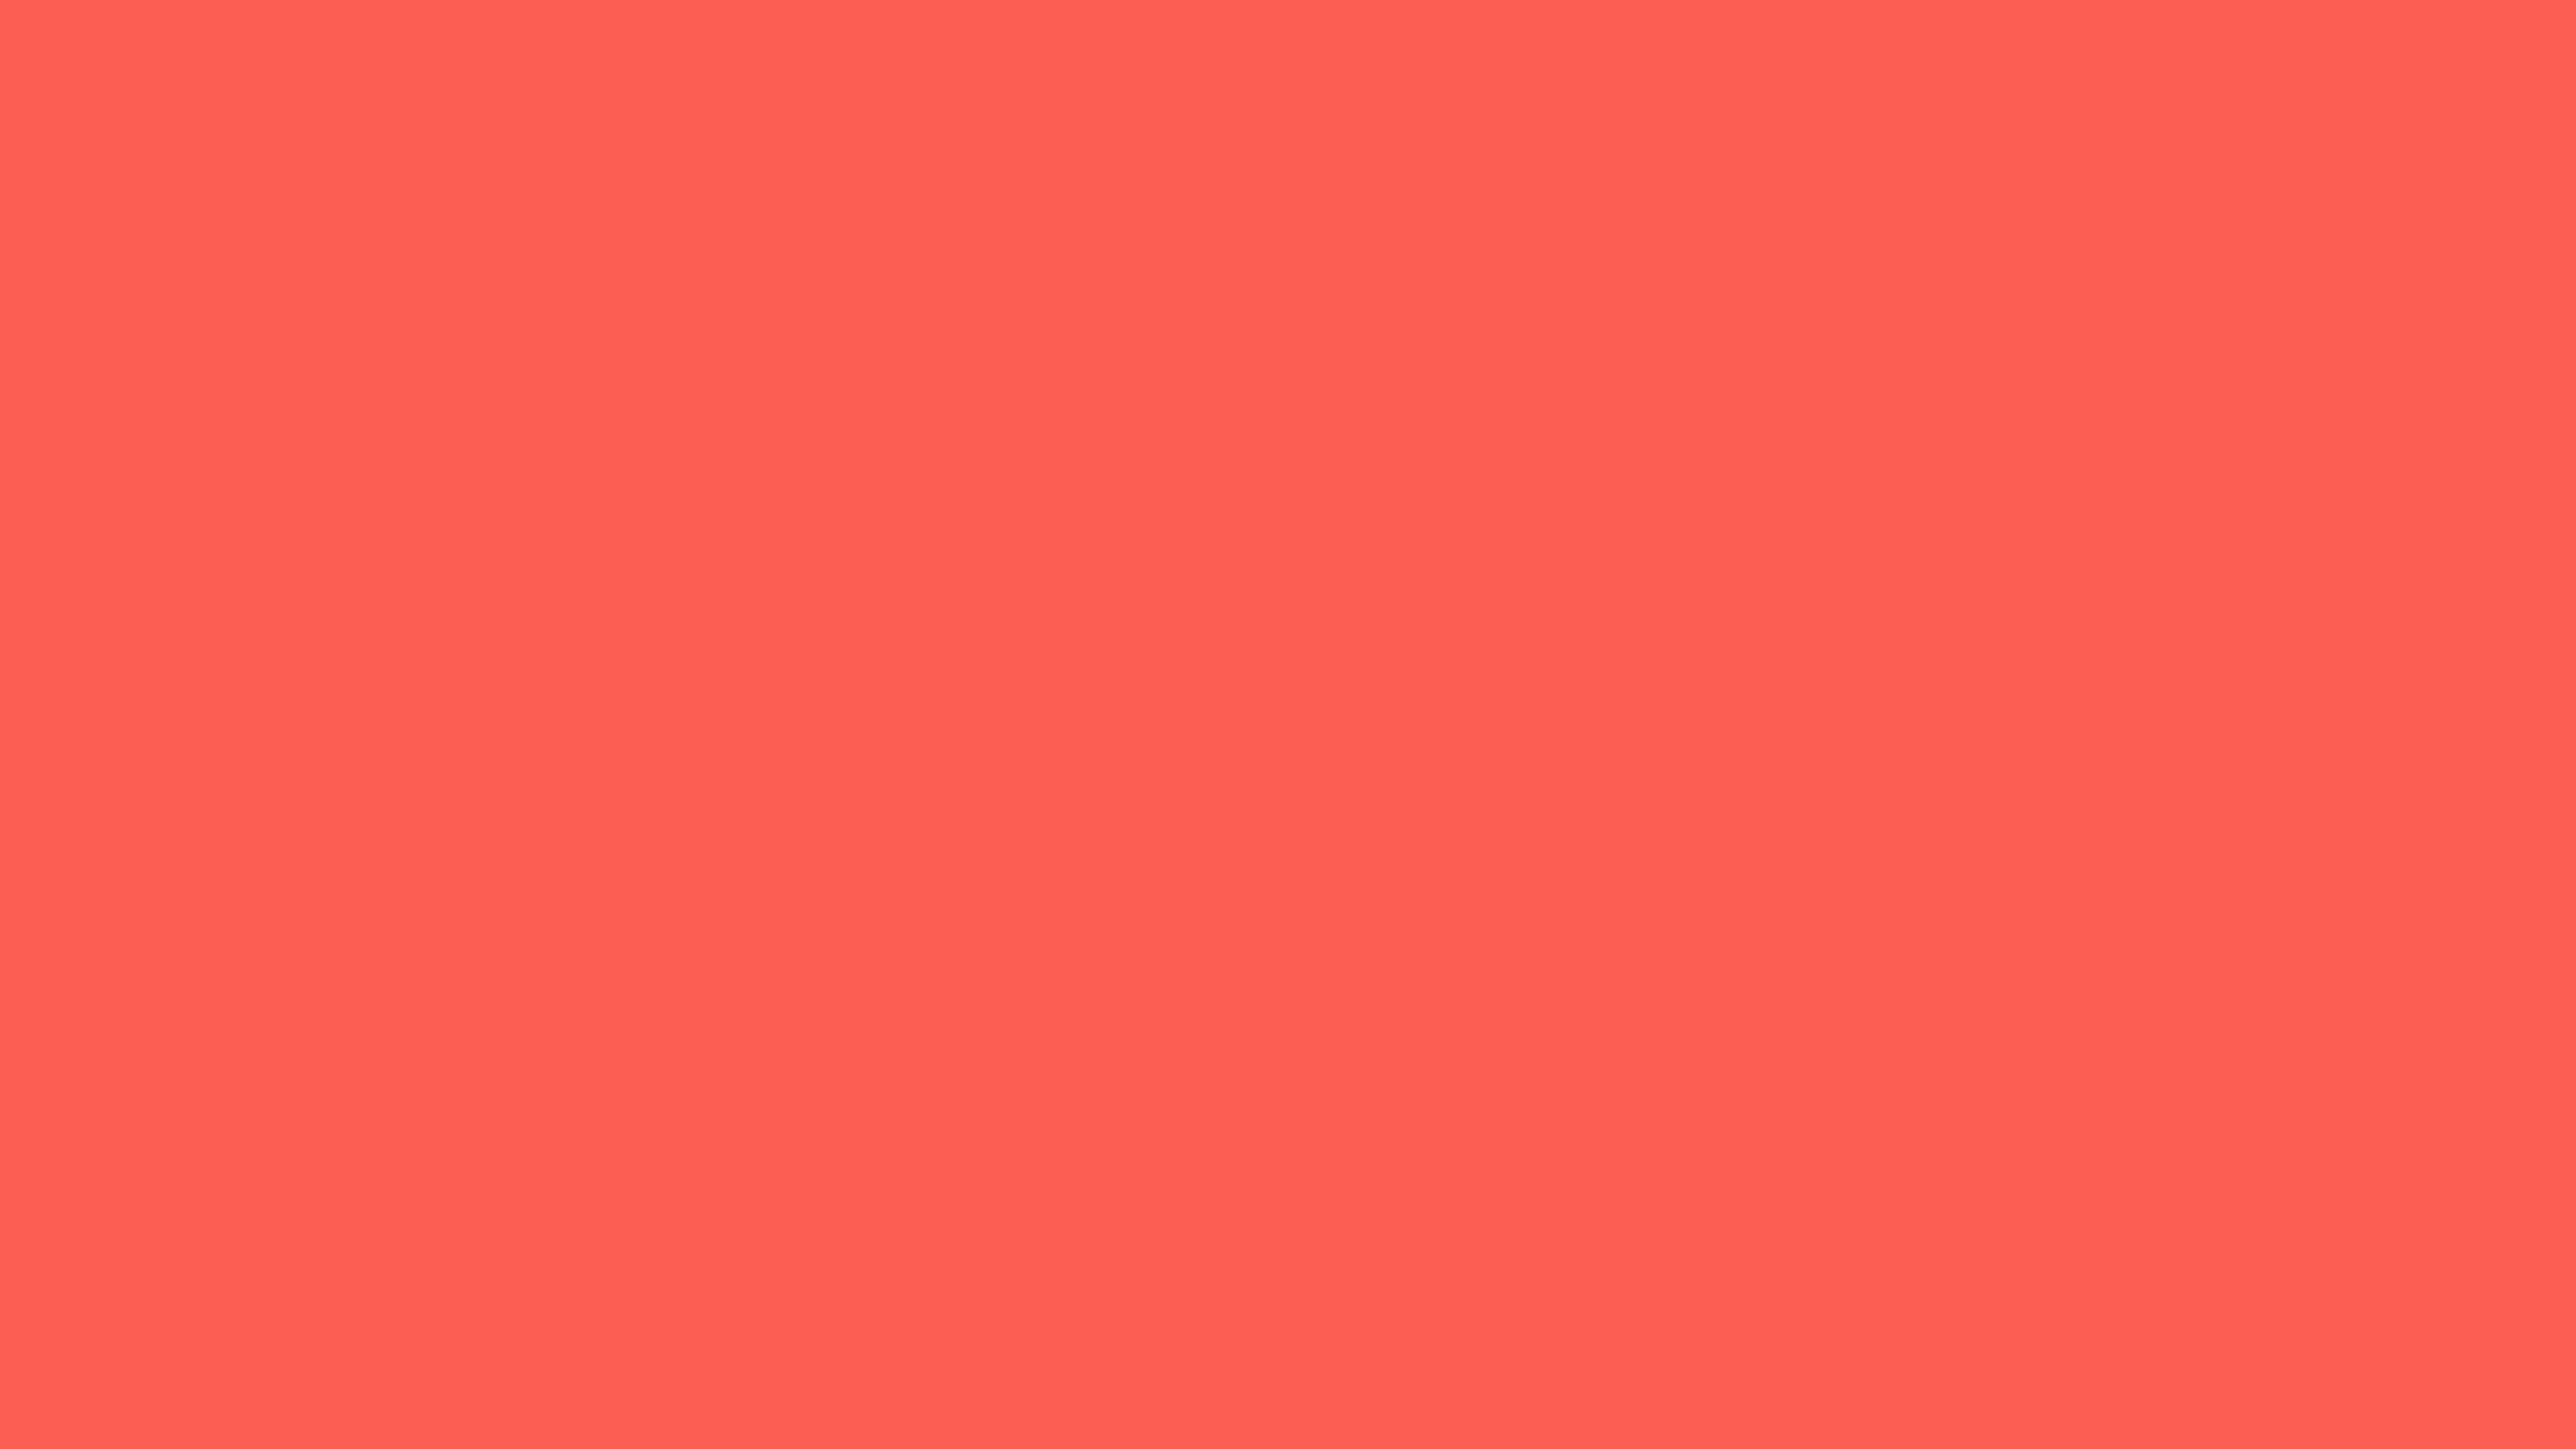 3840x2160 Sunset Orange Solid Color Background